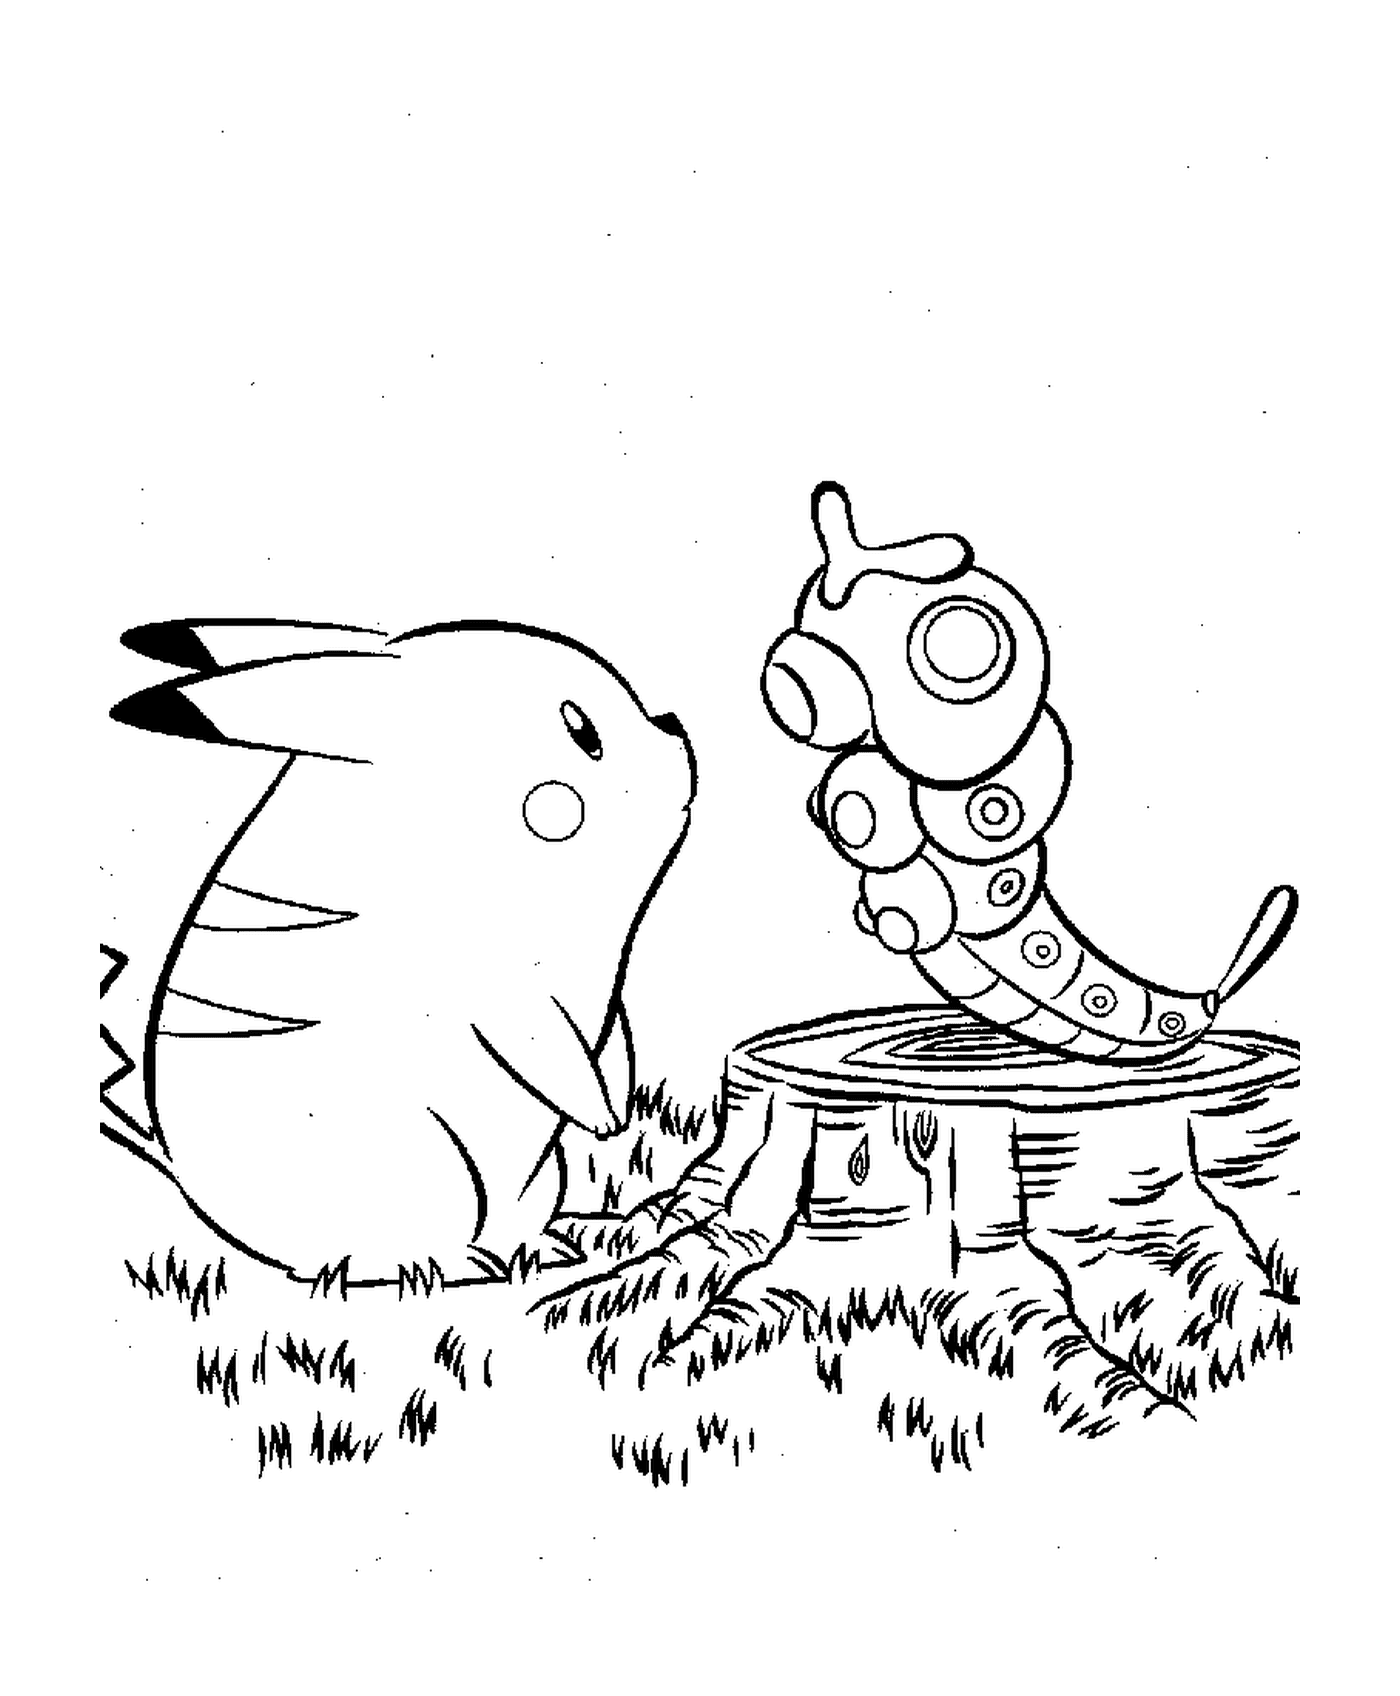  Pikachu begleitet von einem Insekt 